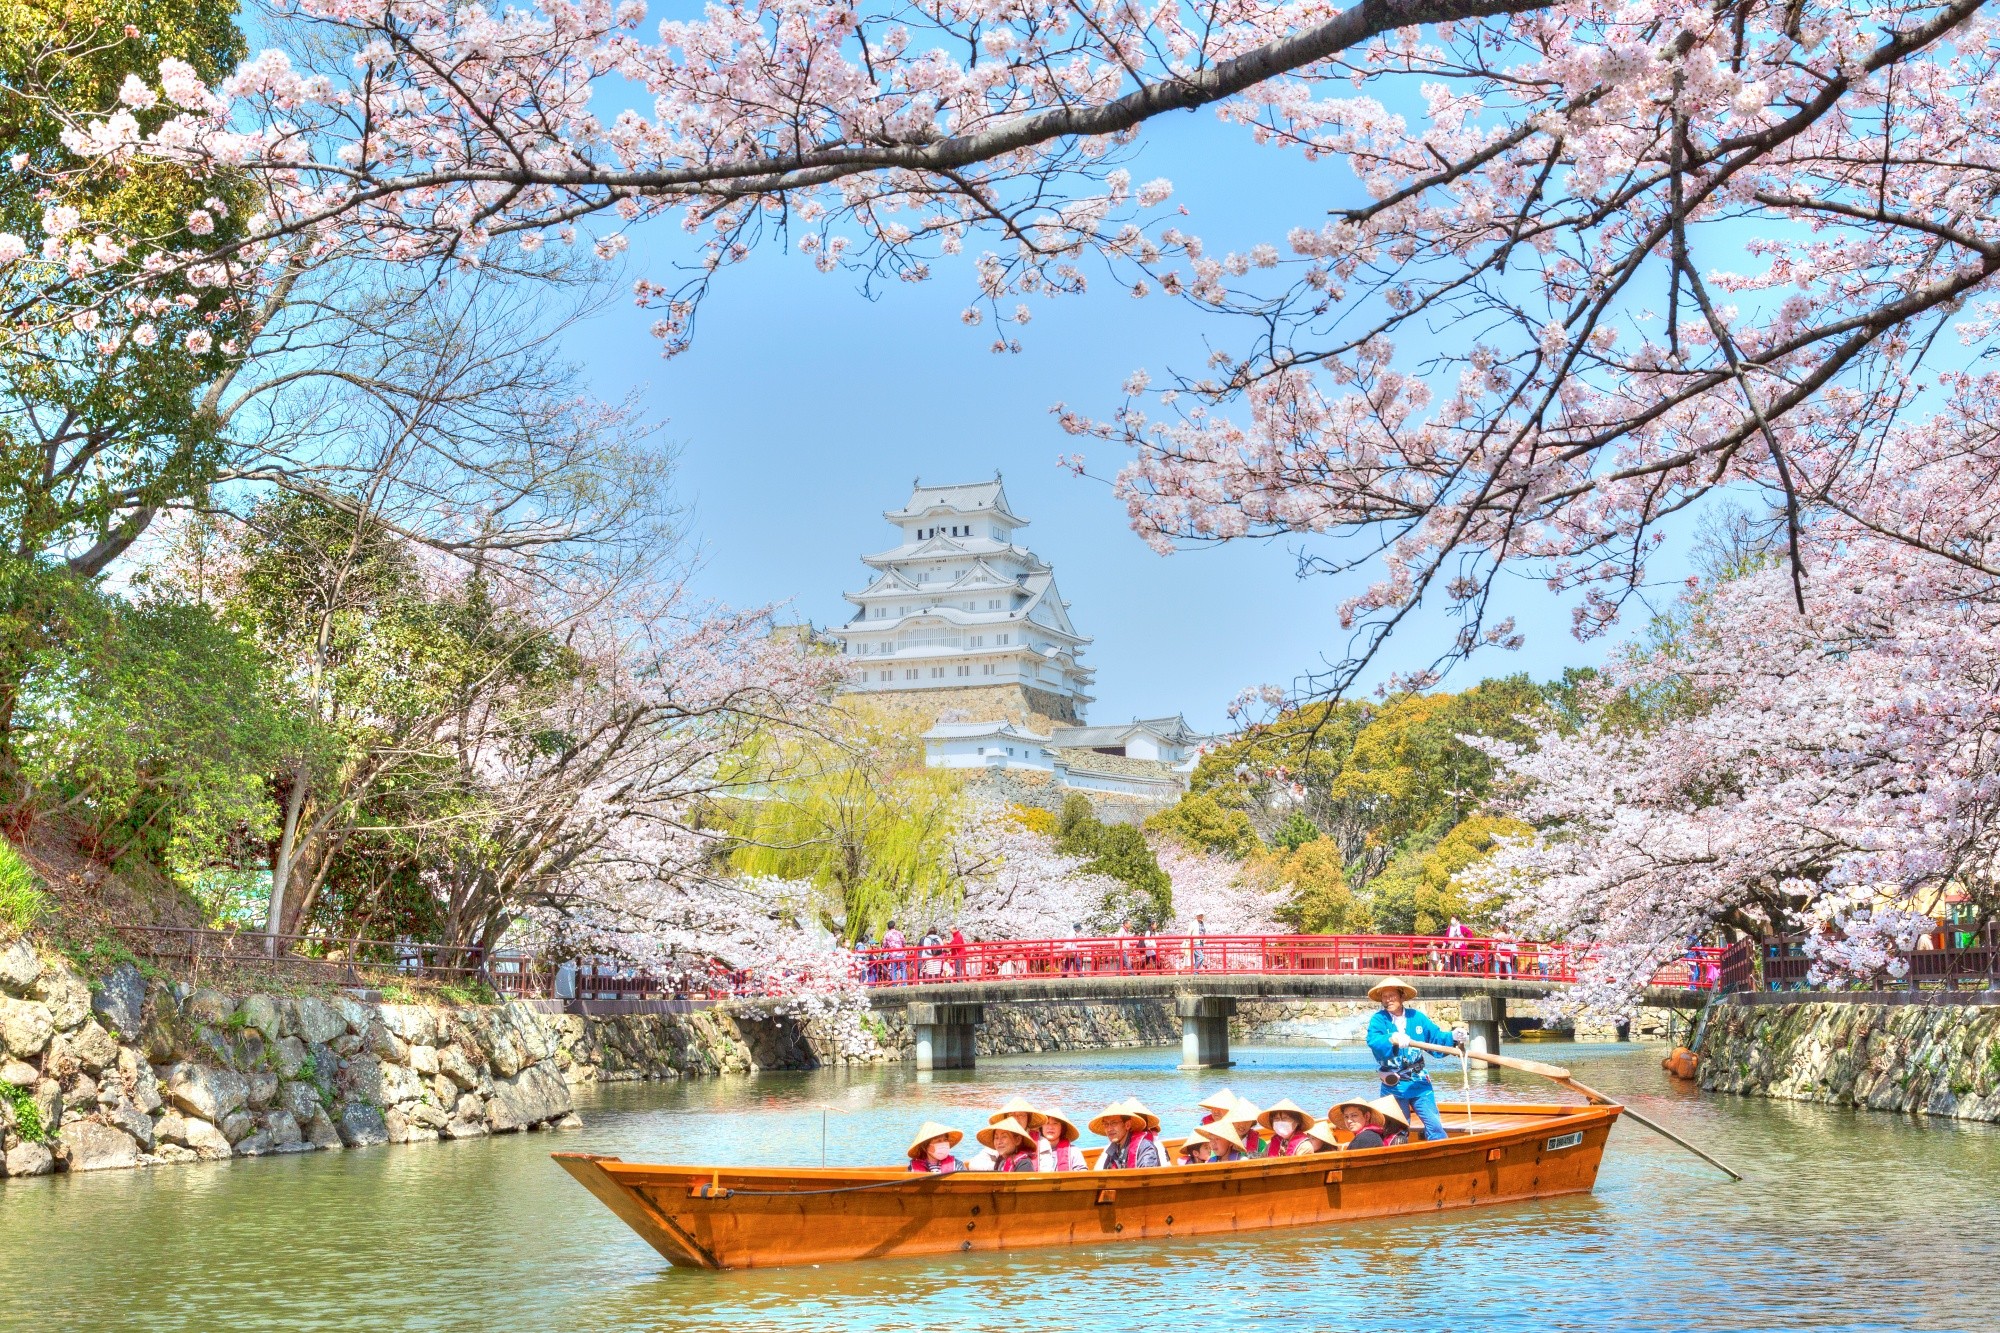 Hoa anh đào Kansai năm nay đang nở rộ, cho thấy một mùa xuân sôi động và rực rỡ. Nếu bạn muốn trải nghiệm vẻ đẹp tuyệt đẹp của hoa anh đào này, hãy đến đúng vào mùa nở hoa và cảm nhận sự đẹp như mơ ước.